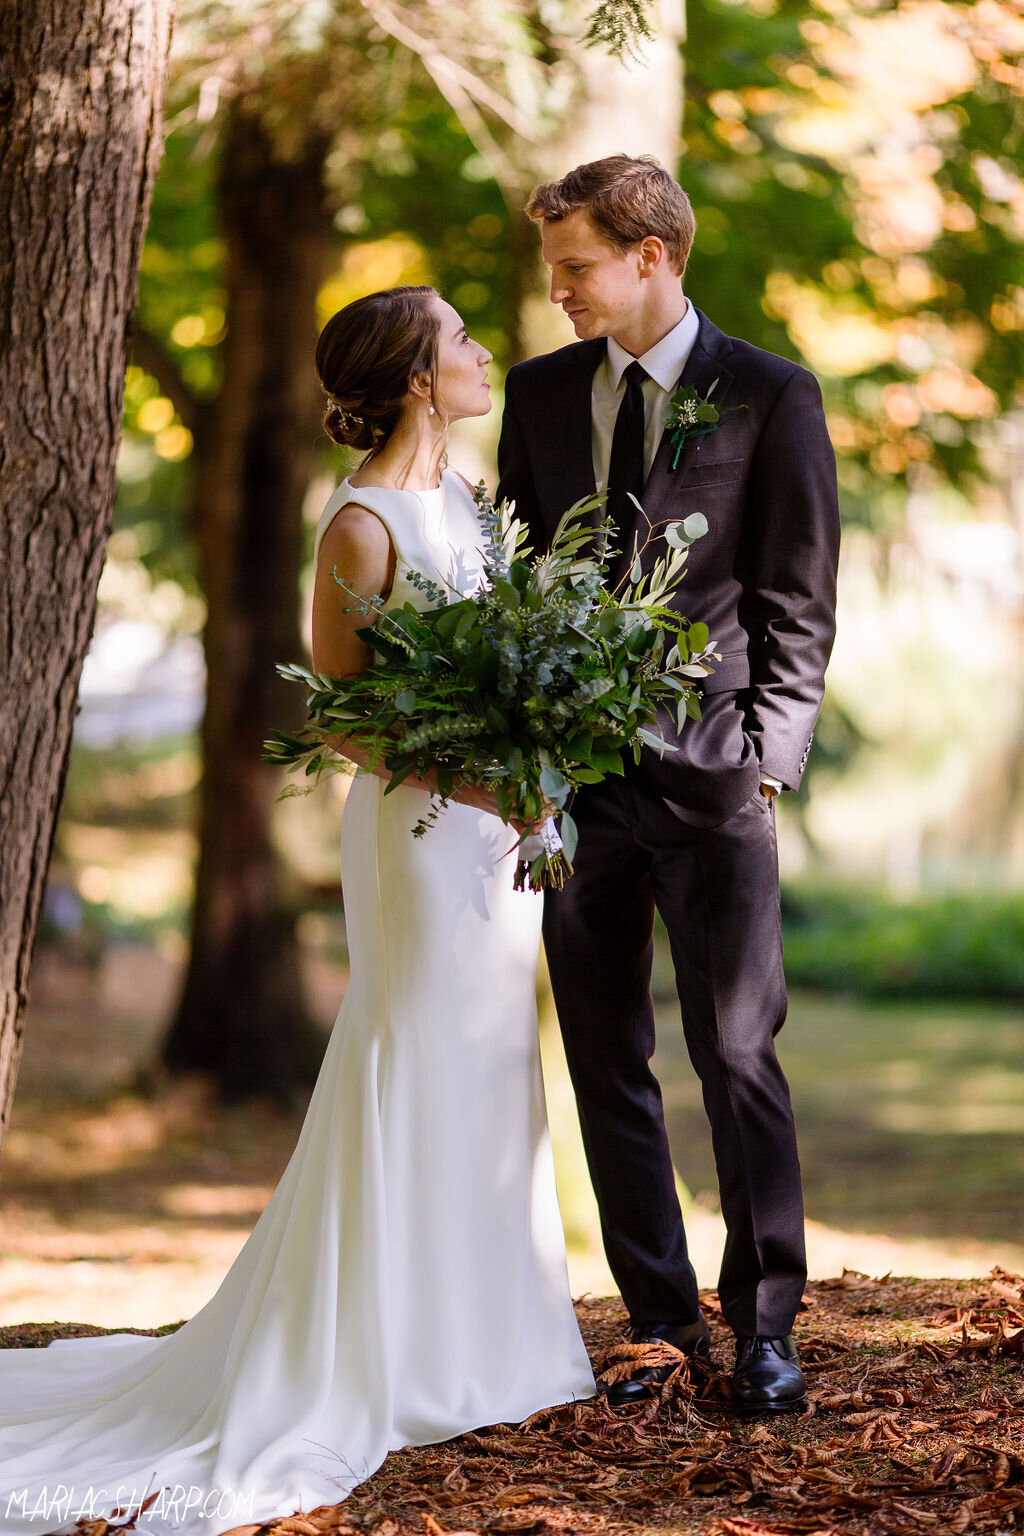 Kristen-Figas-Dan-Ward-wedding-20191012-018.jpg